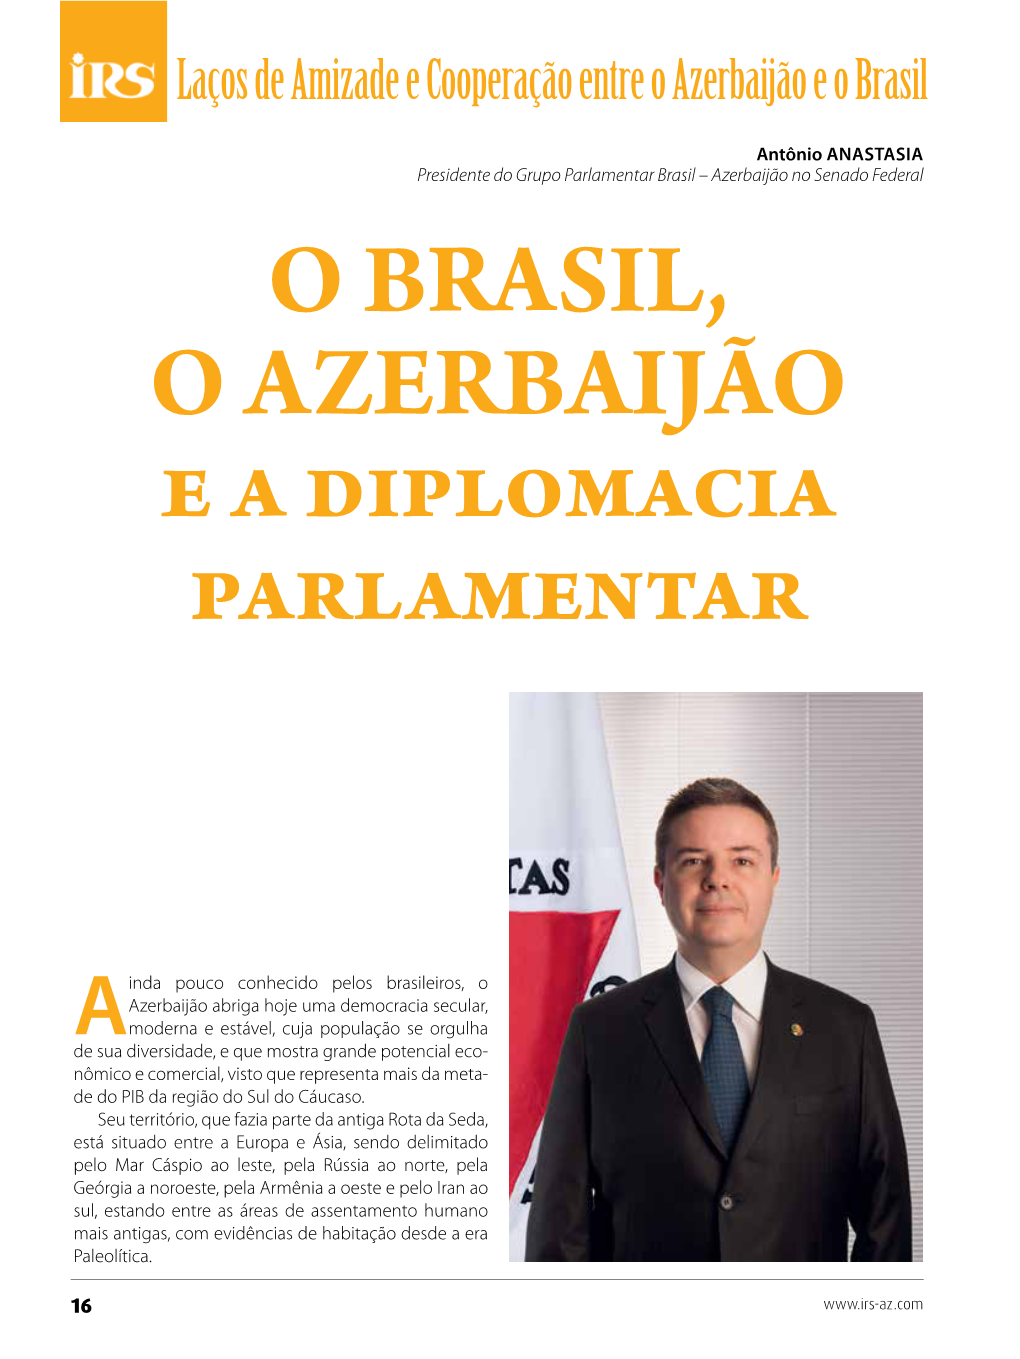 O BRASIL, O AZERBAIJÃO E a Diplomacia Parlamentar